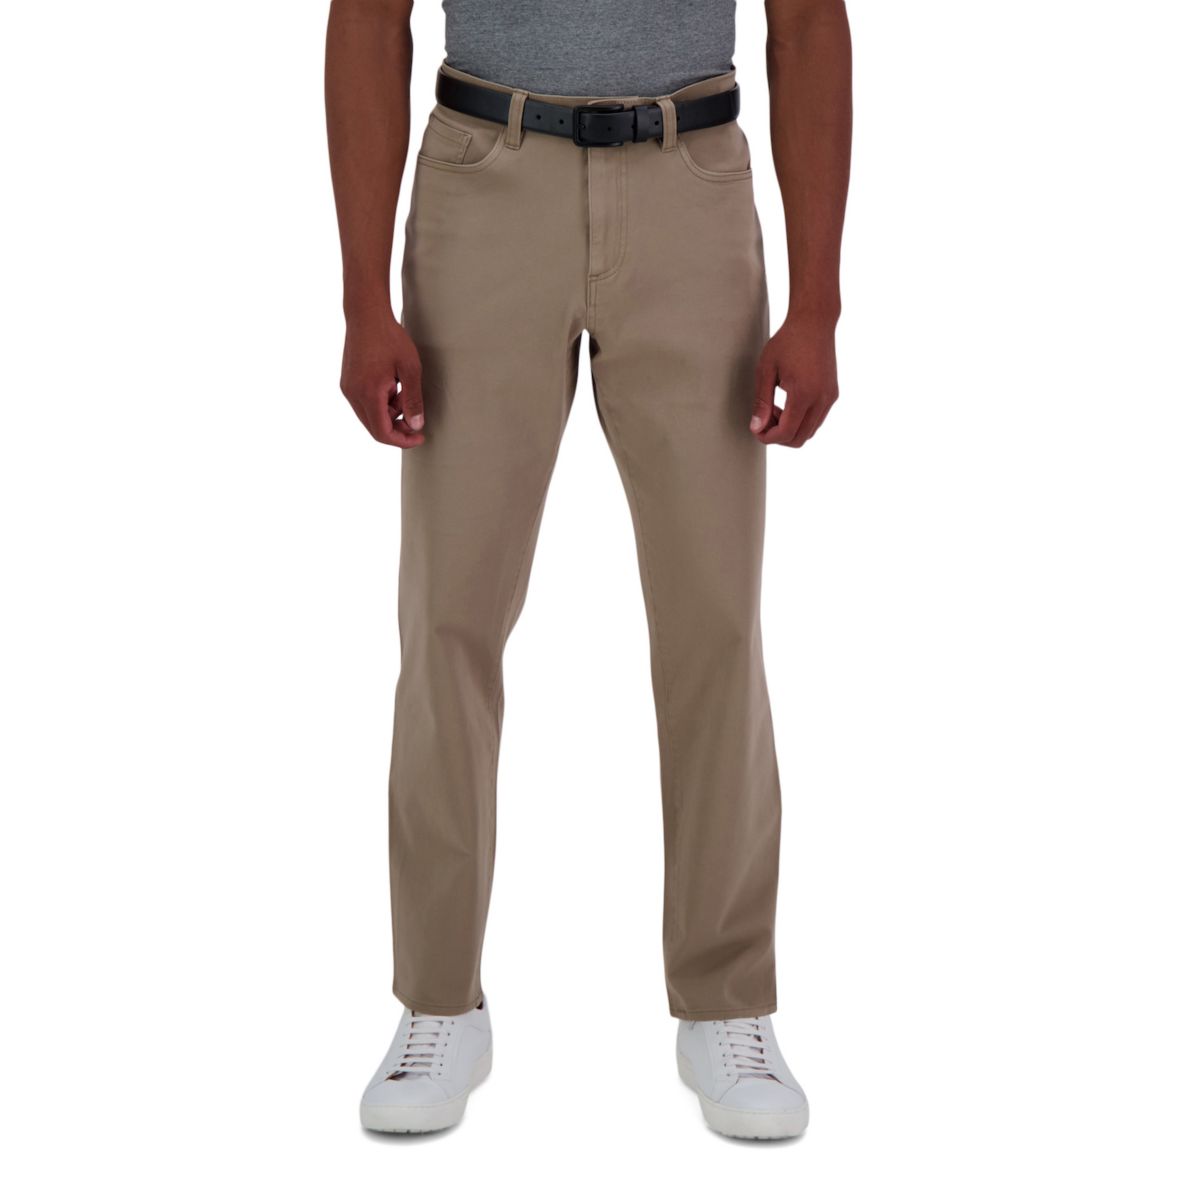 Мужские узкие прямые брюки с 5 карманами Haggar® The Active Series ™ City Flex ™ HAGGAR